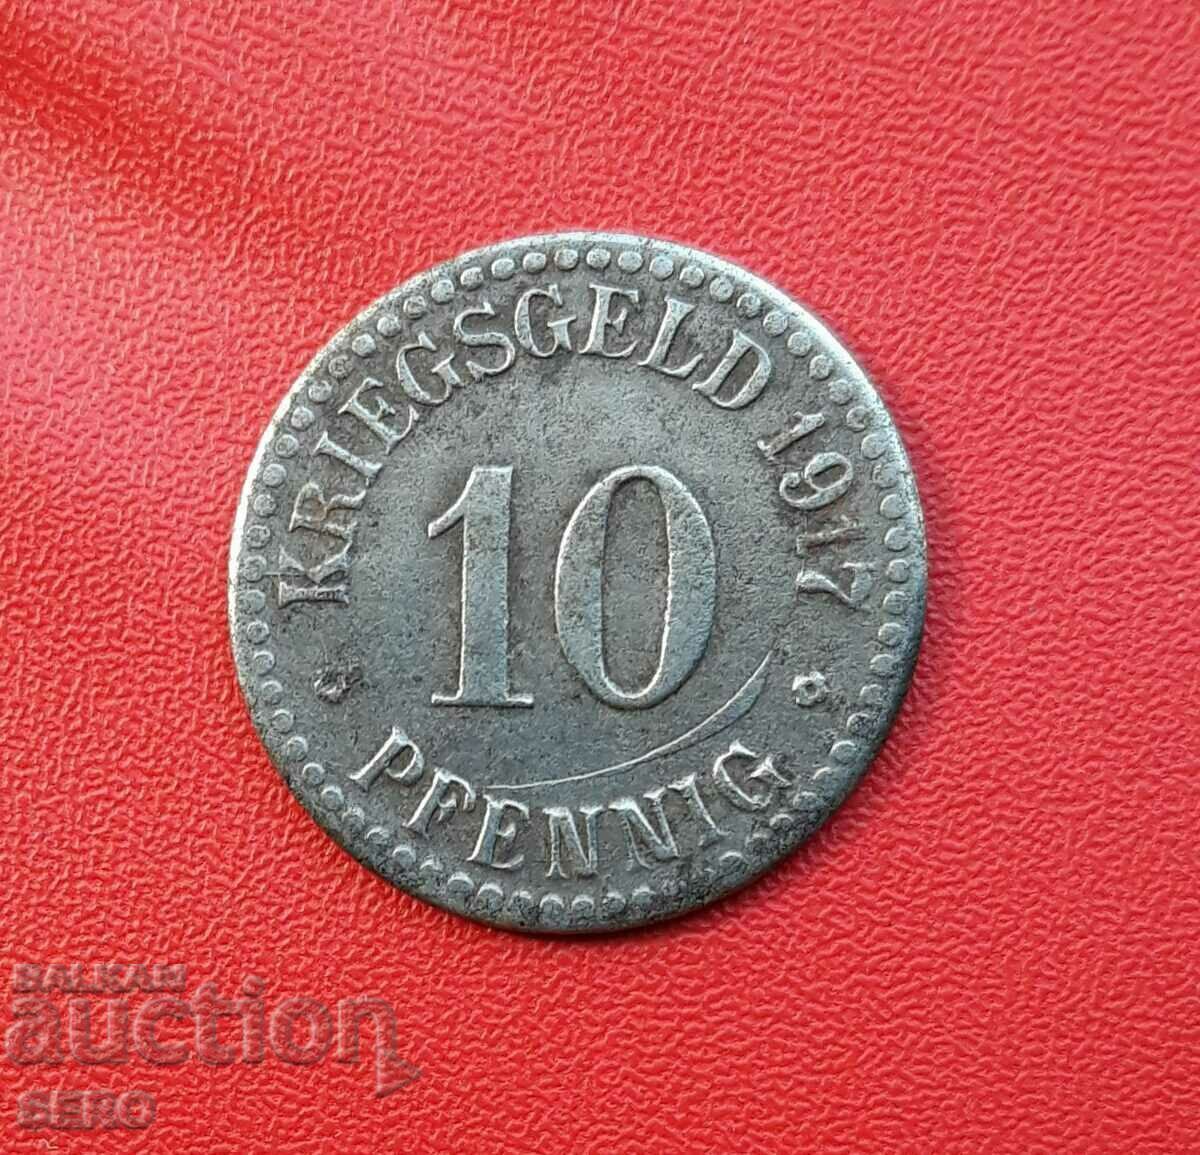 Germany-Hesse-Kassel-10 pfennig 1917-cracked die